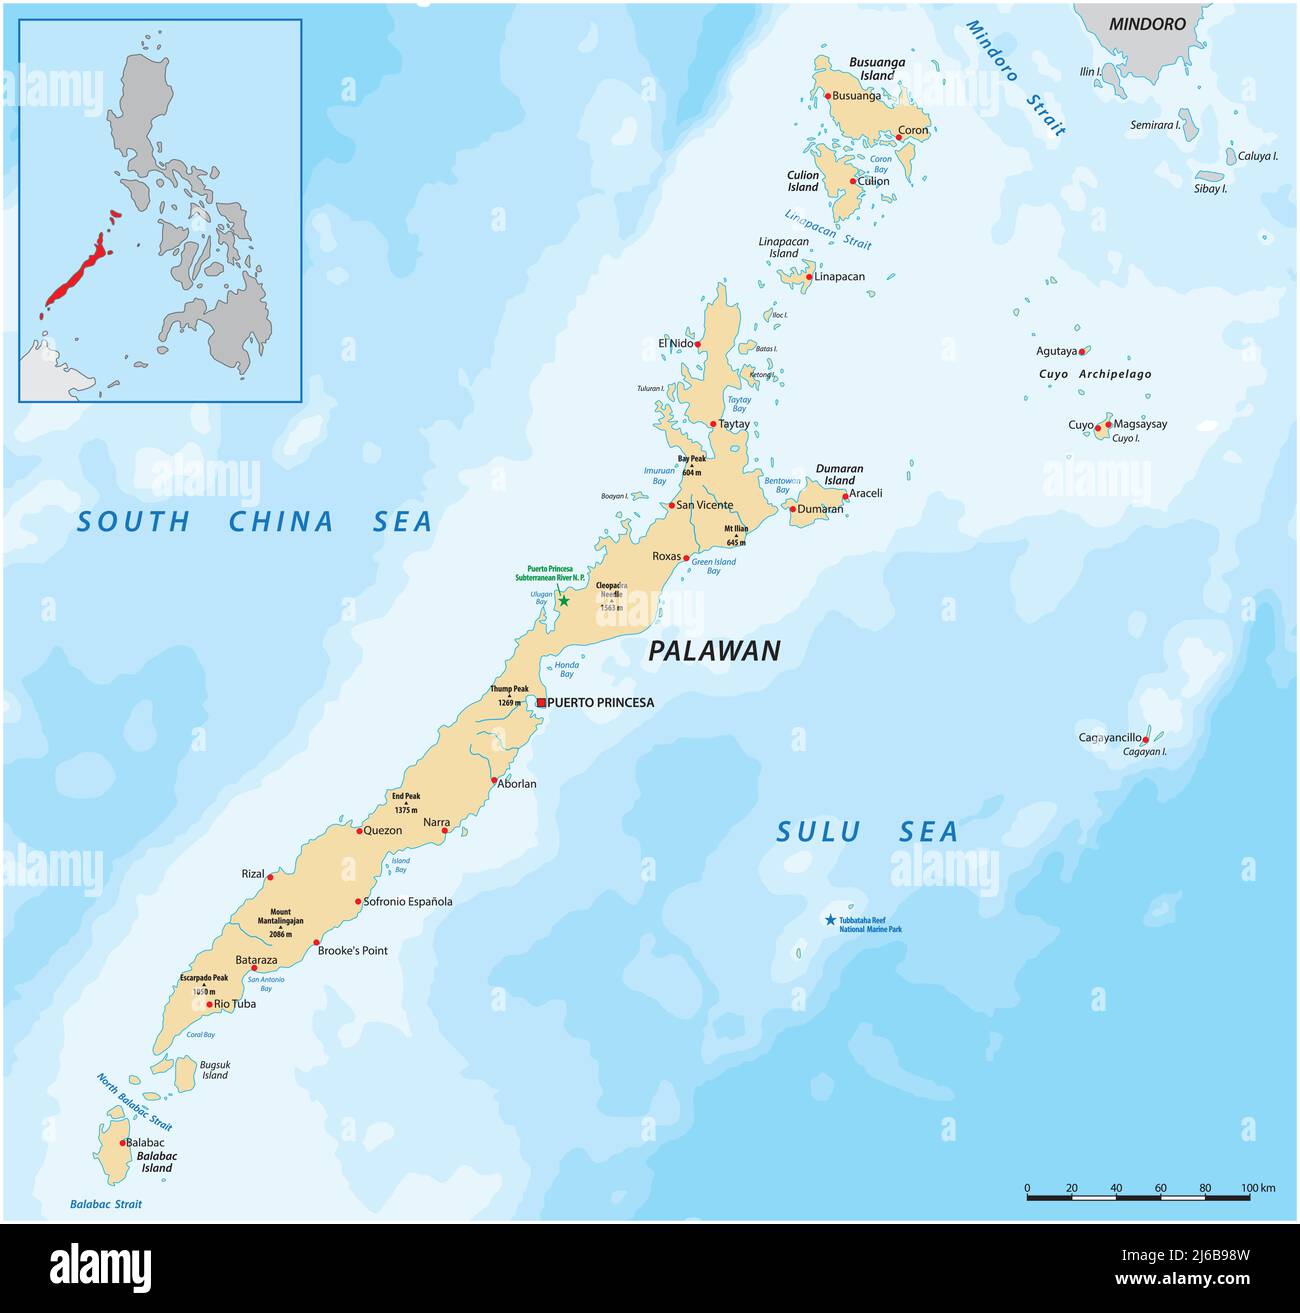 Carte vectorielle de l'ouest de l'île philippine Palawan Illustration de Vecteur